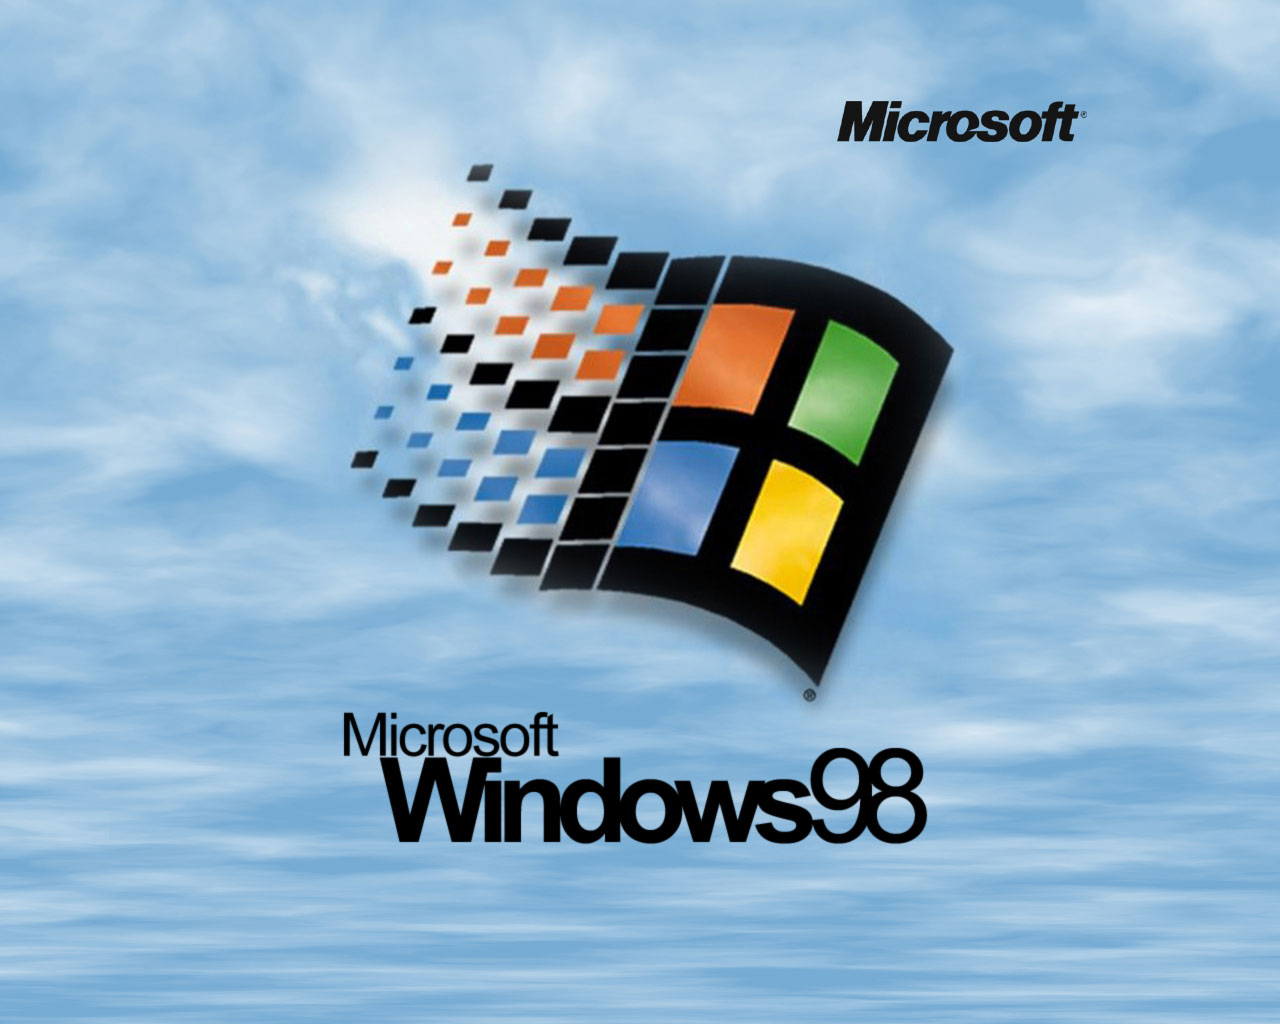 Để có thể sử dụng những hình nền Windows 98 đẹp này, bạn hãy tải về và trang trí cho màn hình máy tính của mình thật nổi bật và độc đáo.